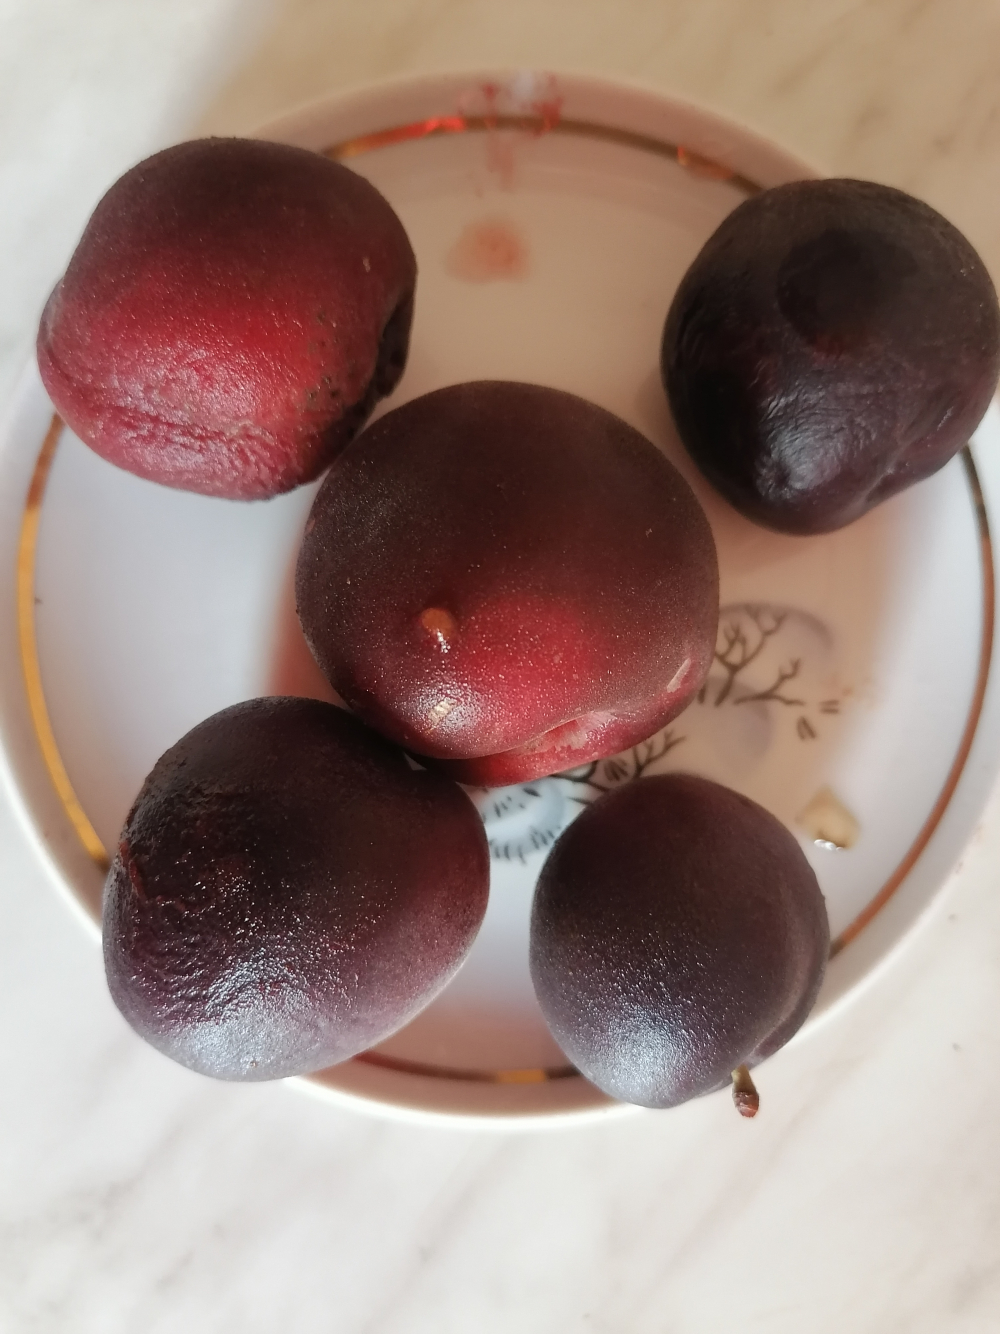 Камышанин похвалился оригинальными сочными плодами черного абрикоса